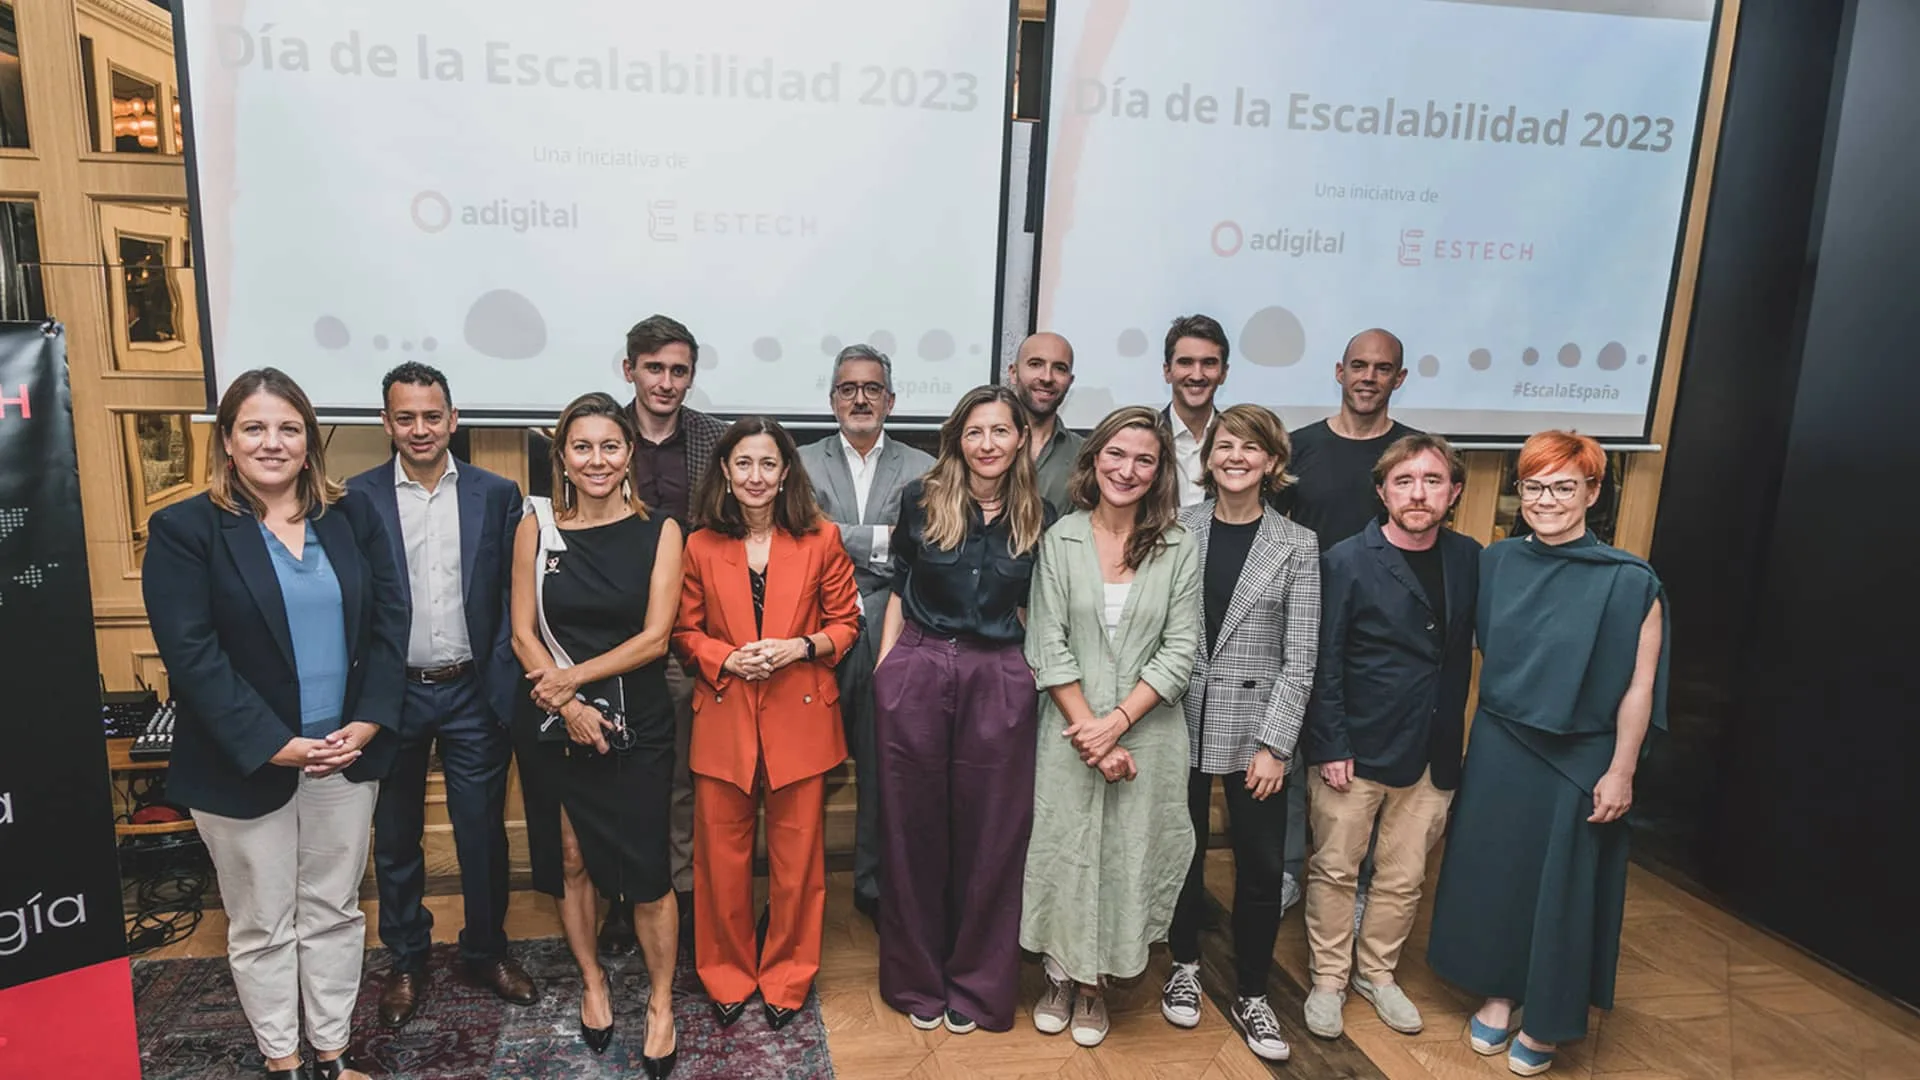 ﻿Adigital y EsTech proponen una Ley de Escalabilidad para impulsar campeones digitales españoles